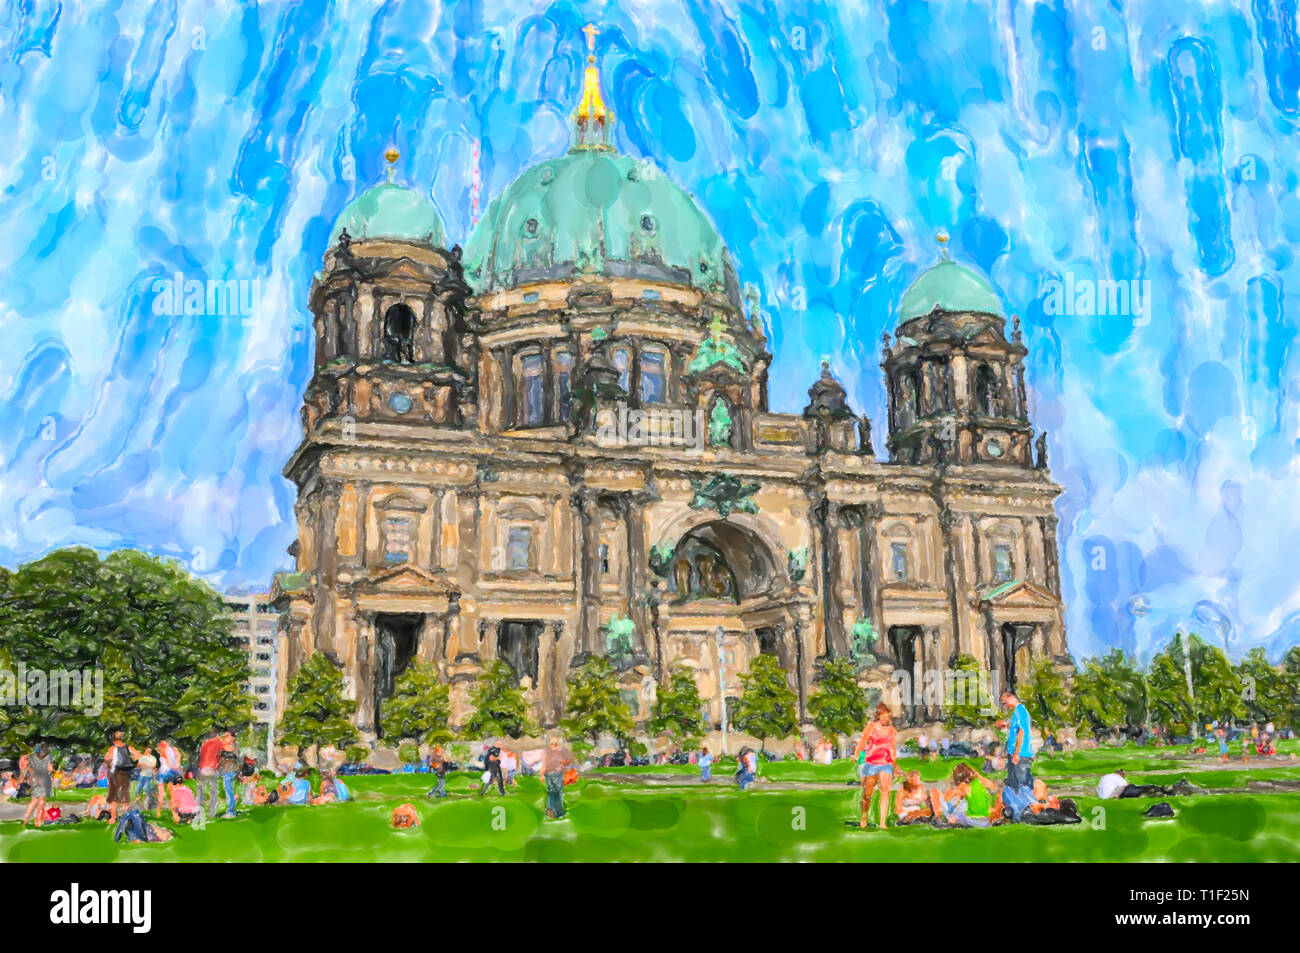 Illustration à l'aquarelle la cathédrale de Berlin. Les gens se reposant à pré. Cathédrale de Berlin en arrière-plan. Banque D'Images